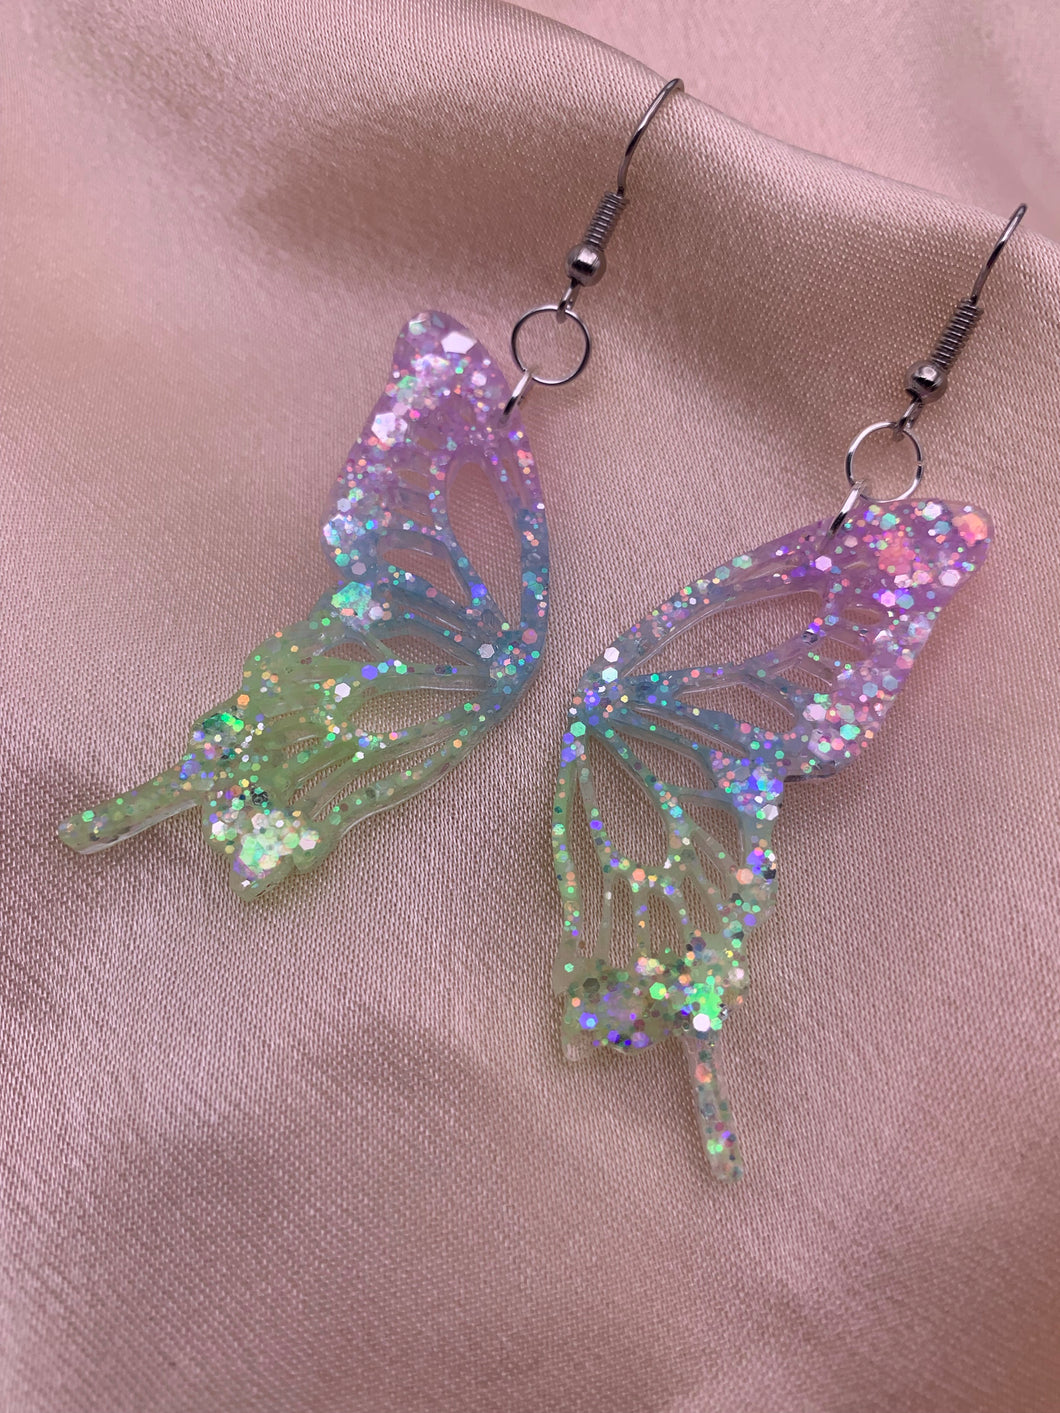 Fairy butterfly wing earrings